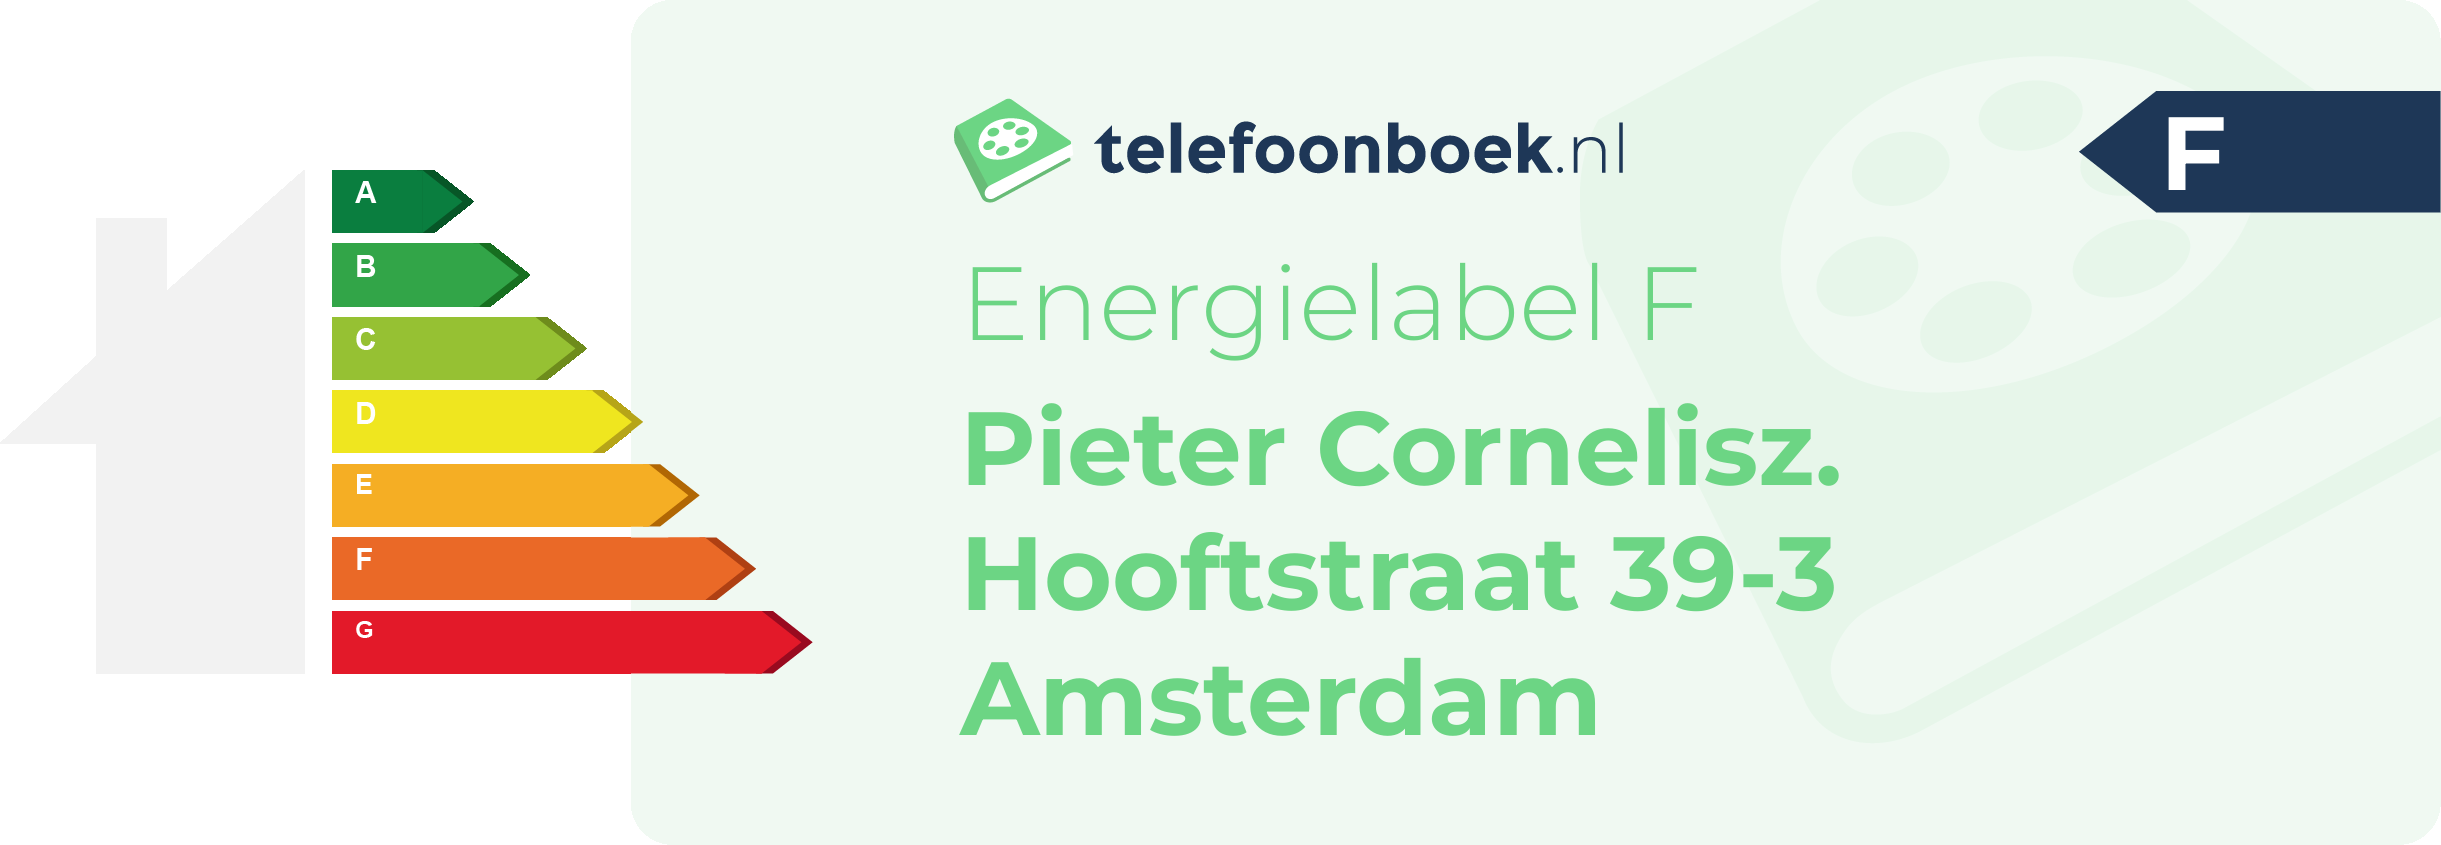 Energielabel Pieter Cornelisz. Hooftstraat 39-3 Amsterdam